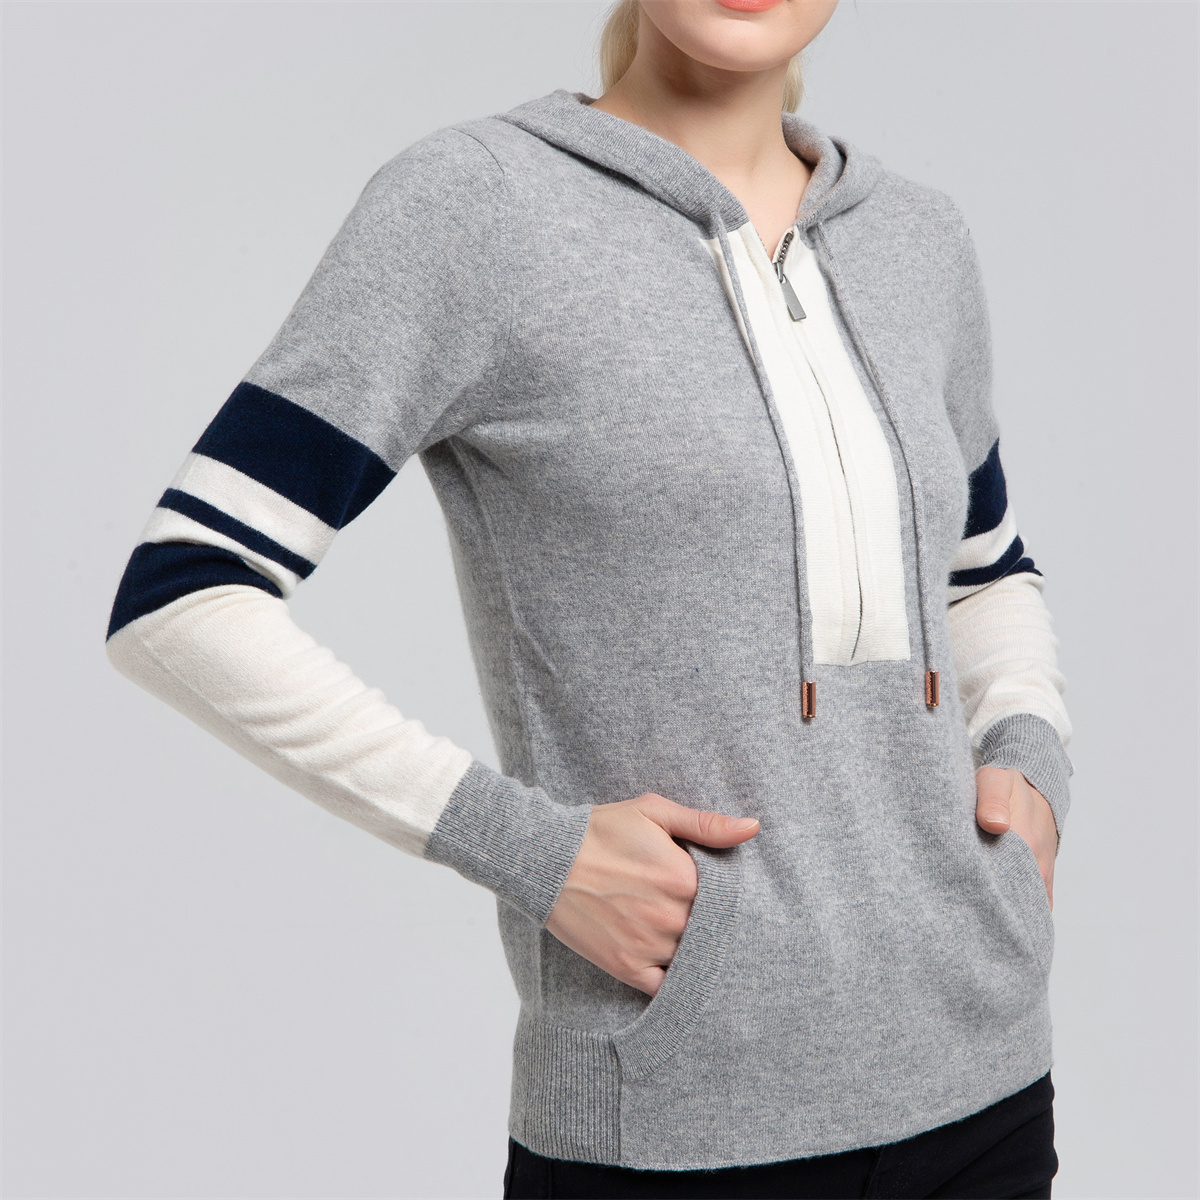 Women’s hoody sweater W11